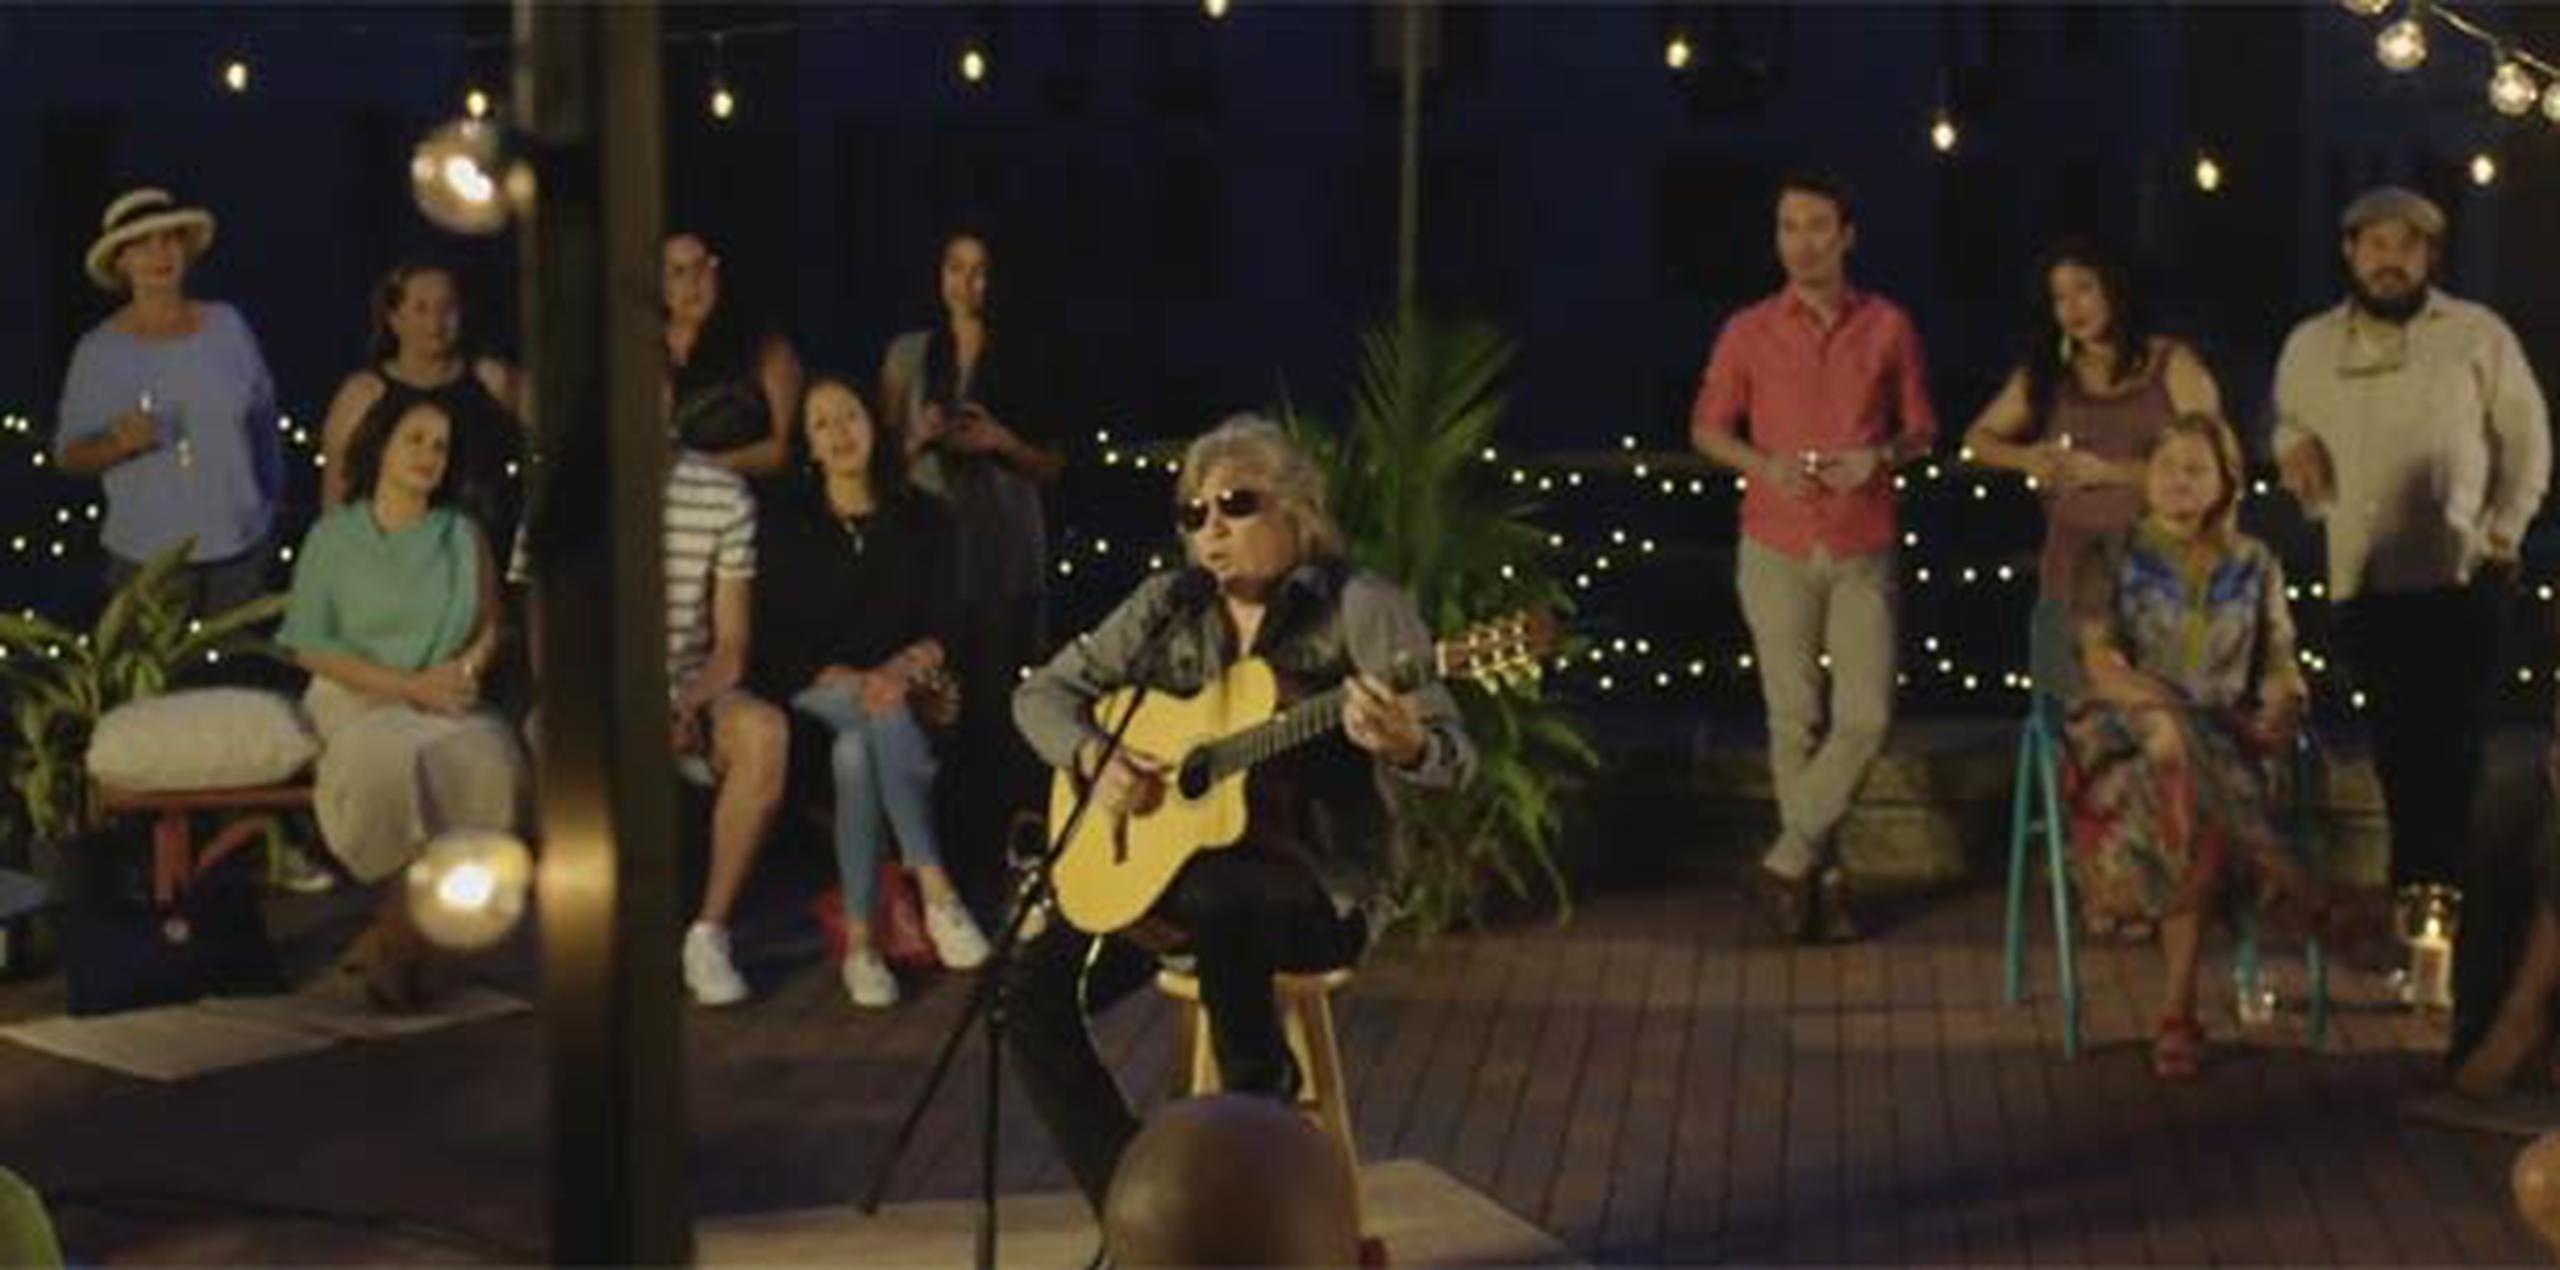 En el especial, José Feliciano interpretó el tema "En mi viejo San Juan". (Captura/Banco Popular)